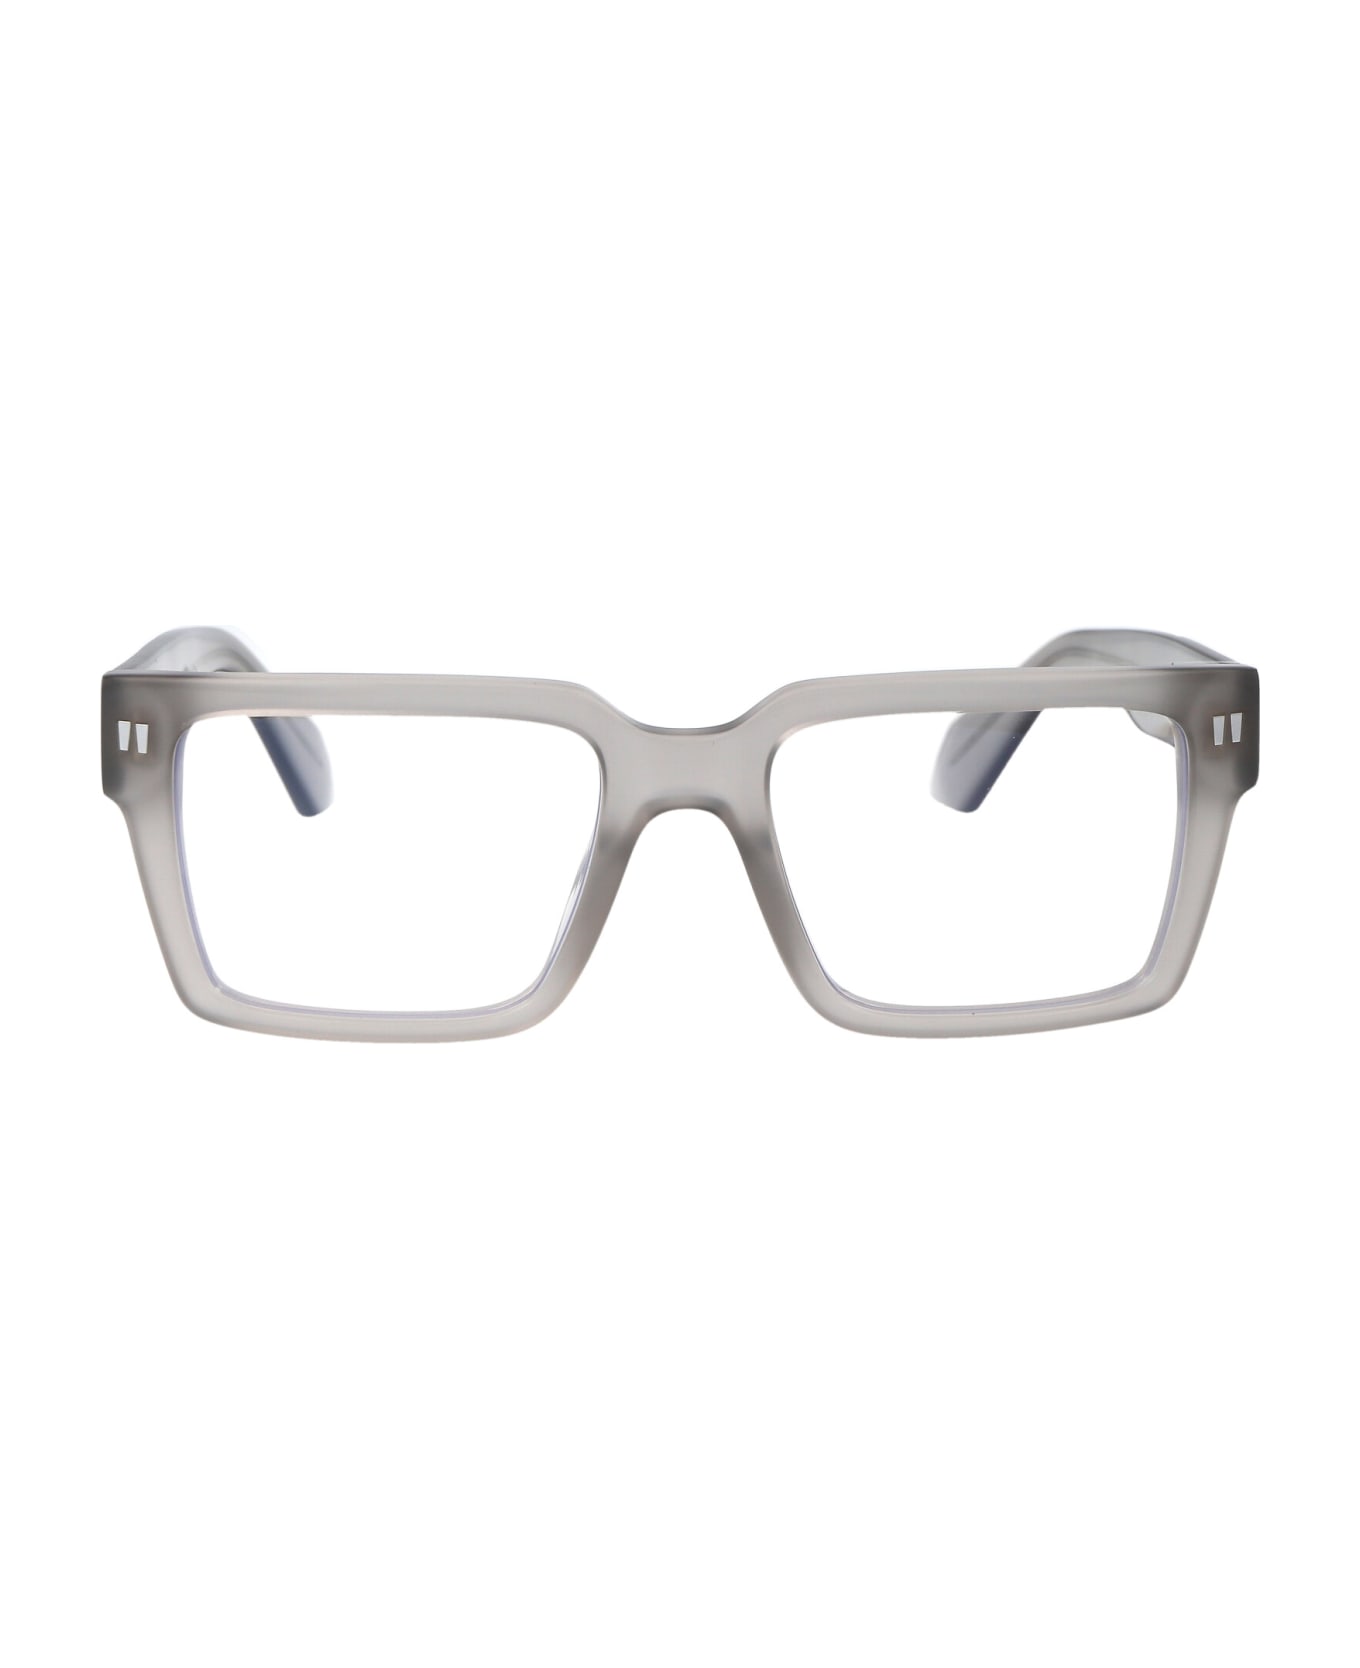 Off-White Optical Style 54 Glasses - 0900 GREY  アイウェア